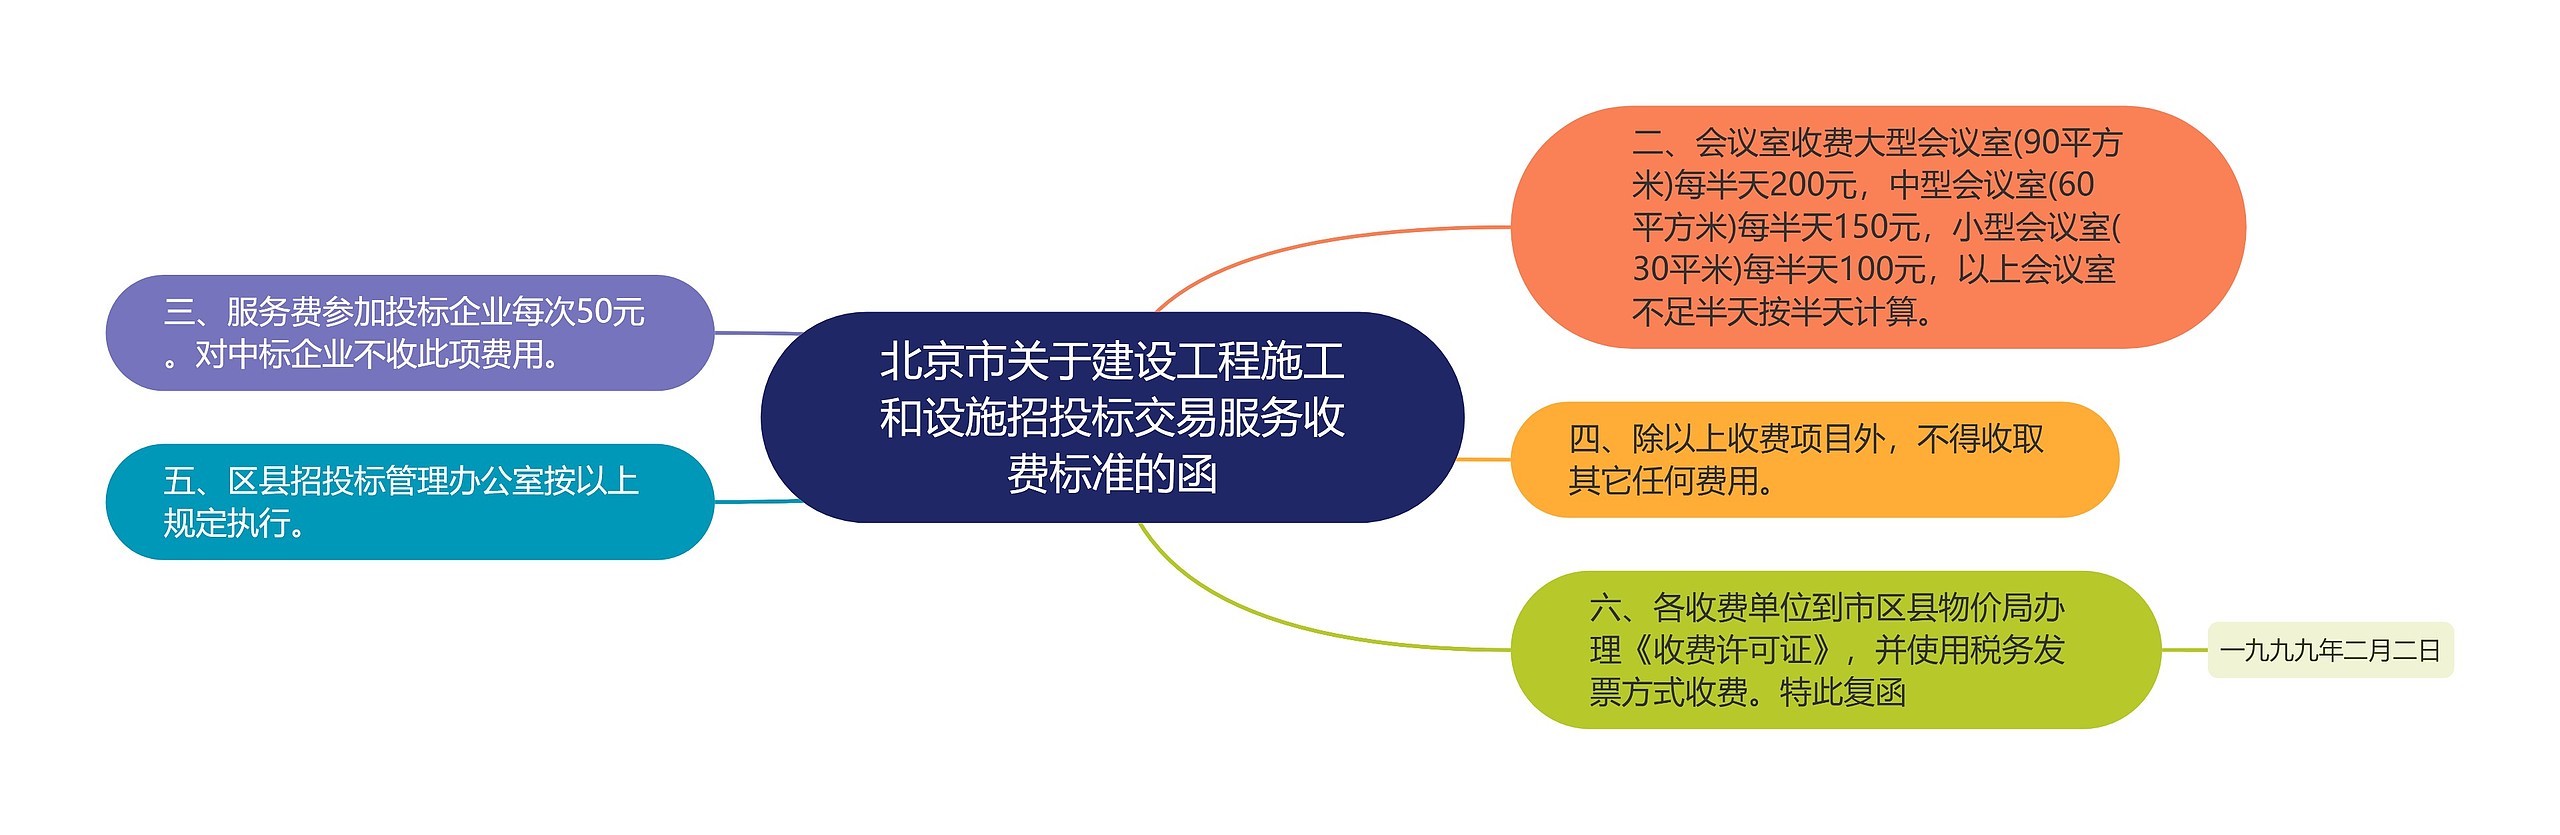 北京市关于建设工程施工和设施招投标交易服务收费标准的函